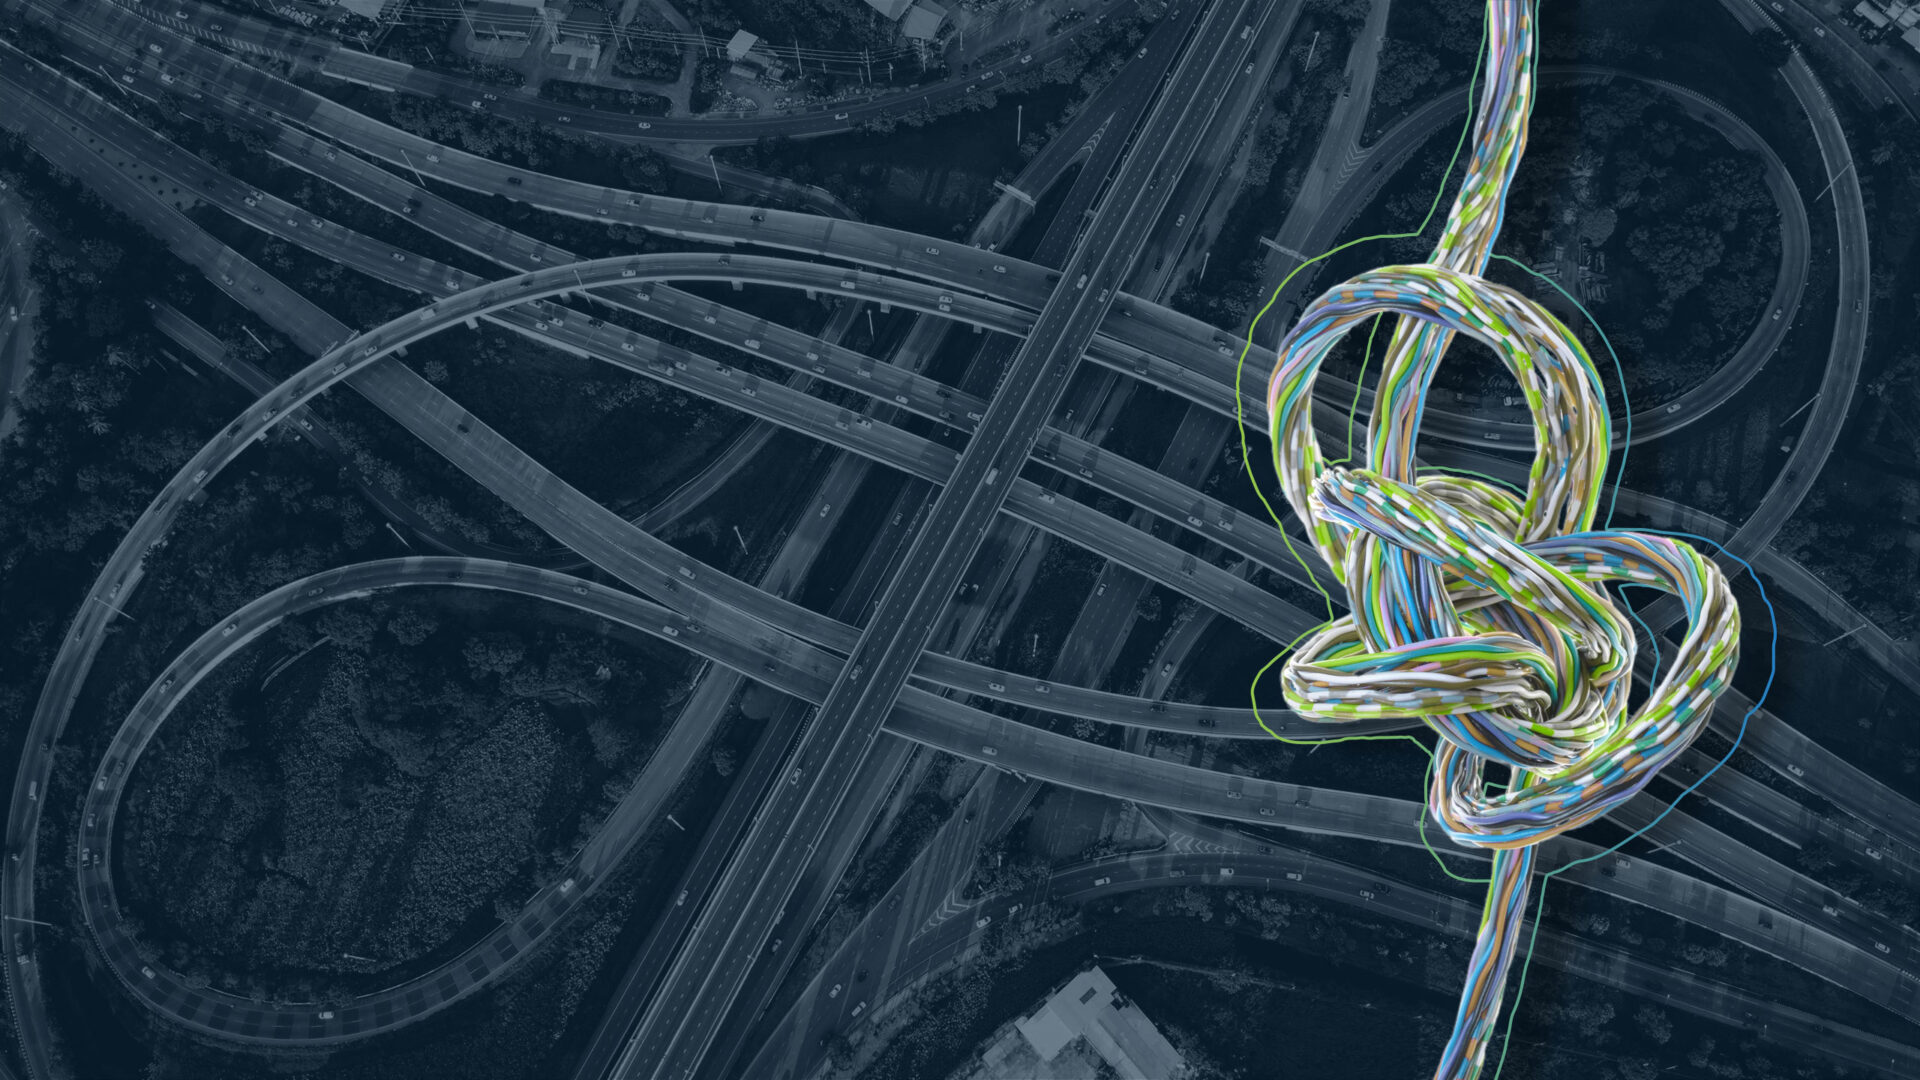 Headerbild zur Seite "Effektives Varianten- und Komplexitätsmanagement": Zeigt einen komplexen Knoten aus Kabeln im Vordergrund und ein komplexes Straßennetz im Hintergrund